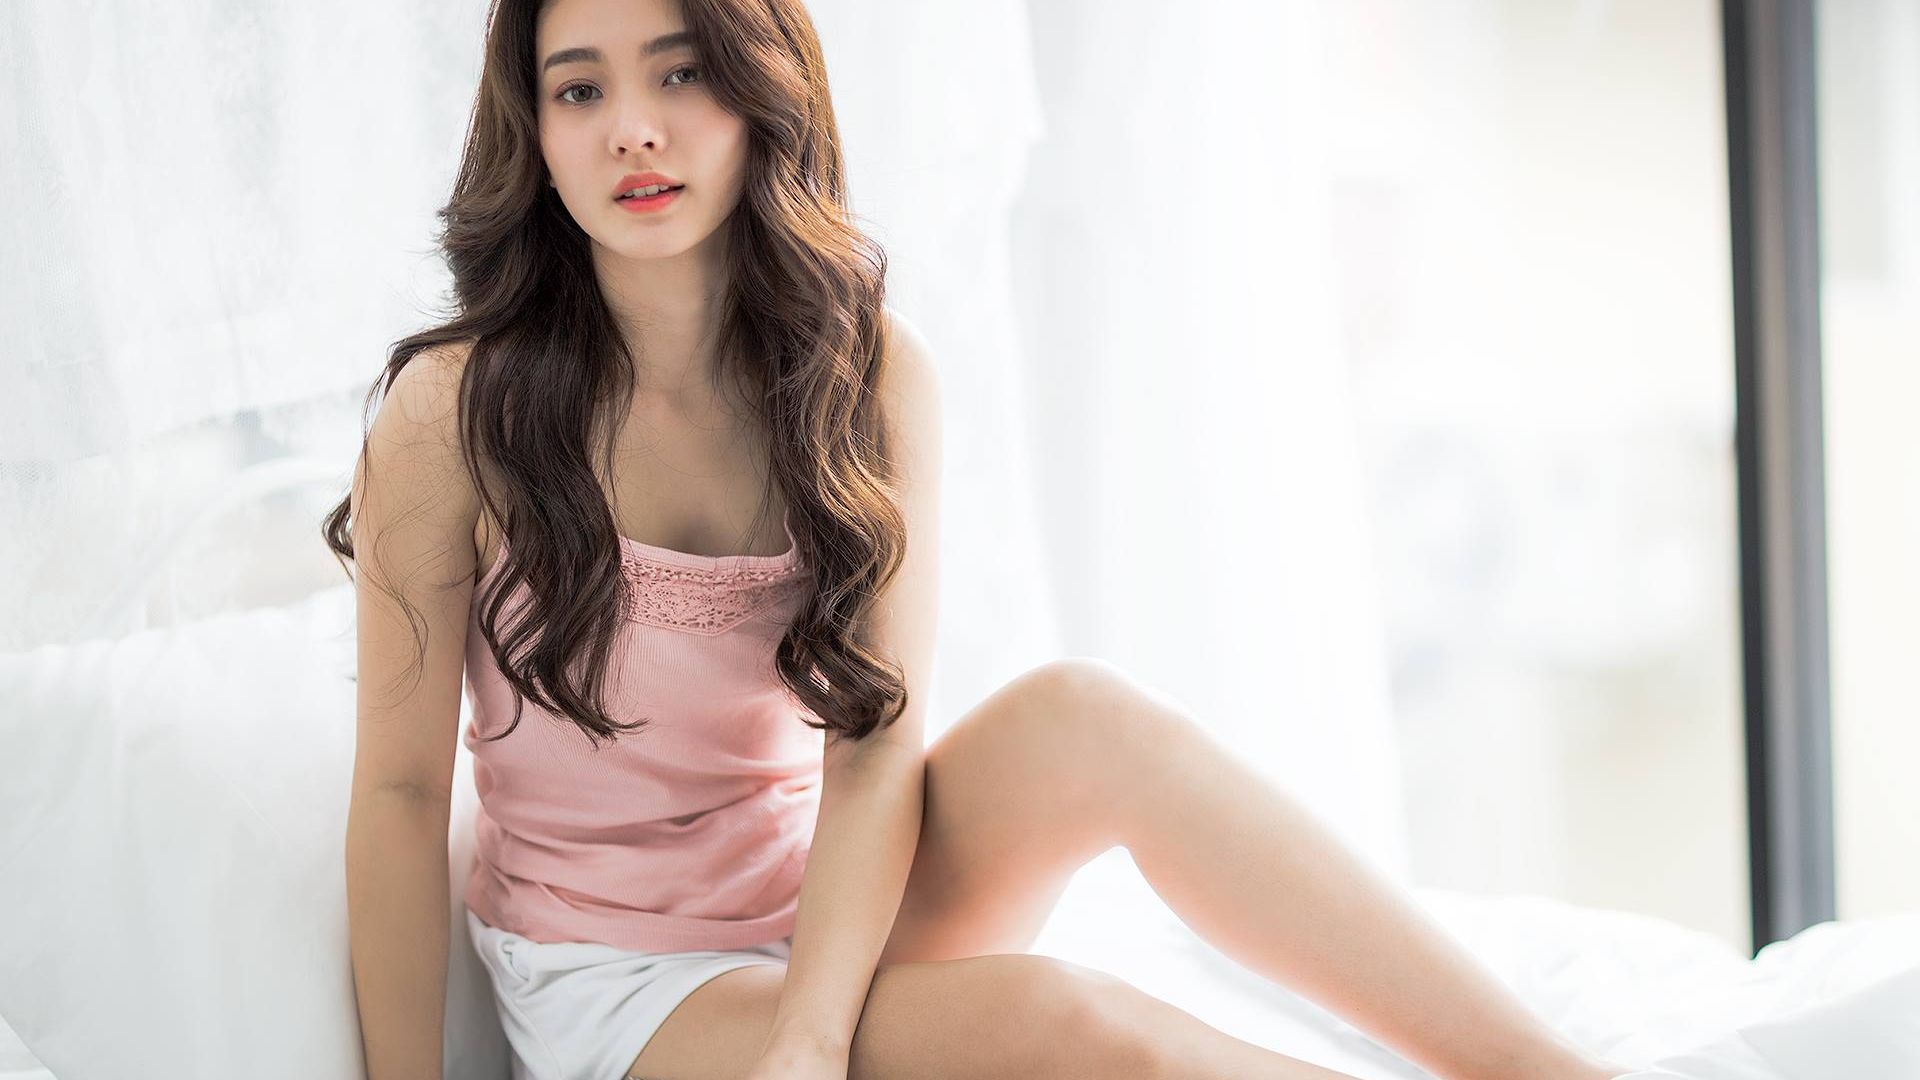 Wallpaper Beautiful girl, Asian model, pink top